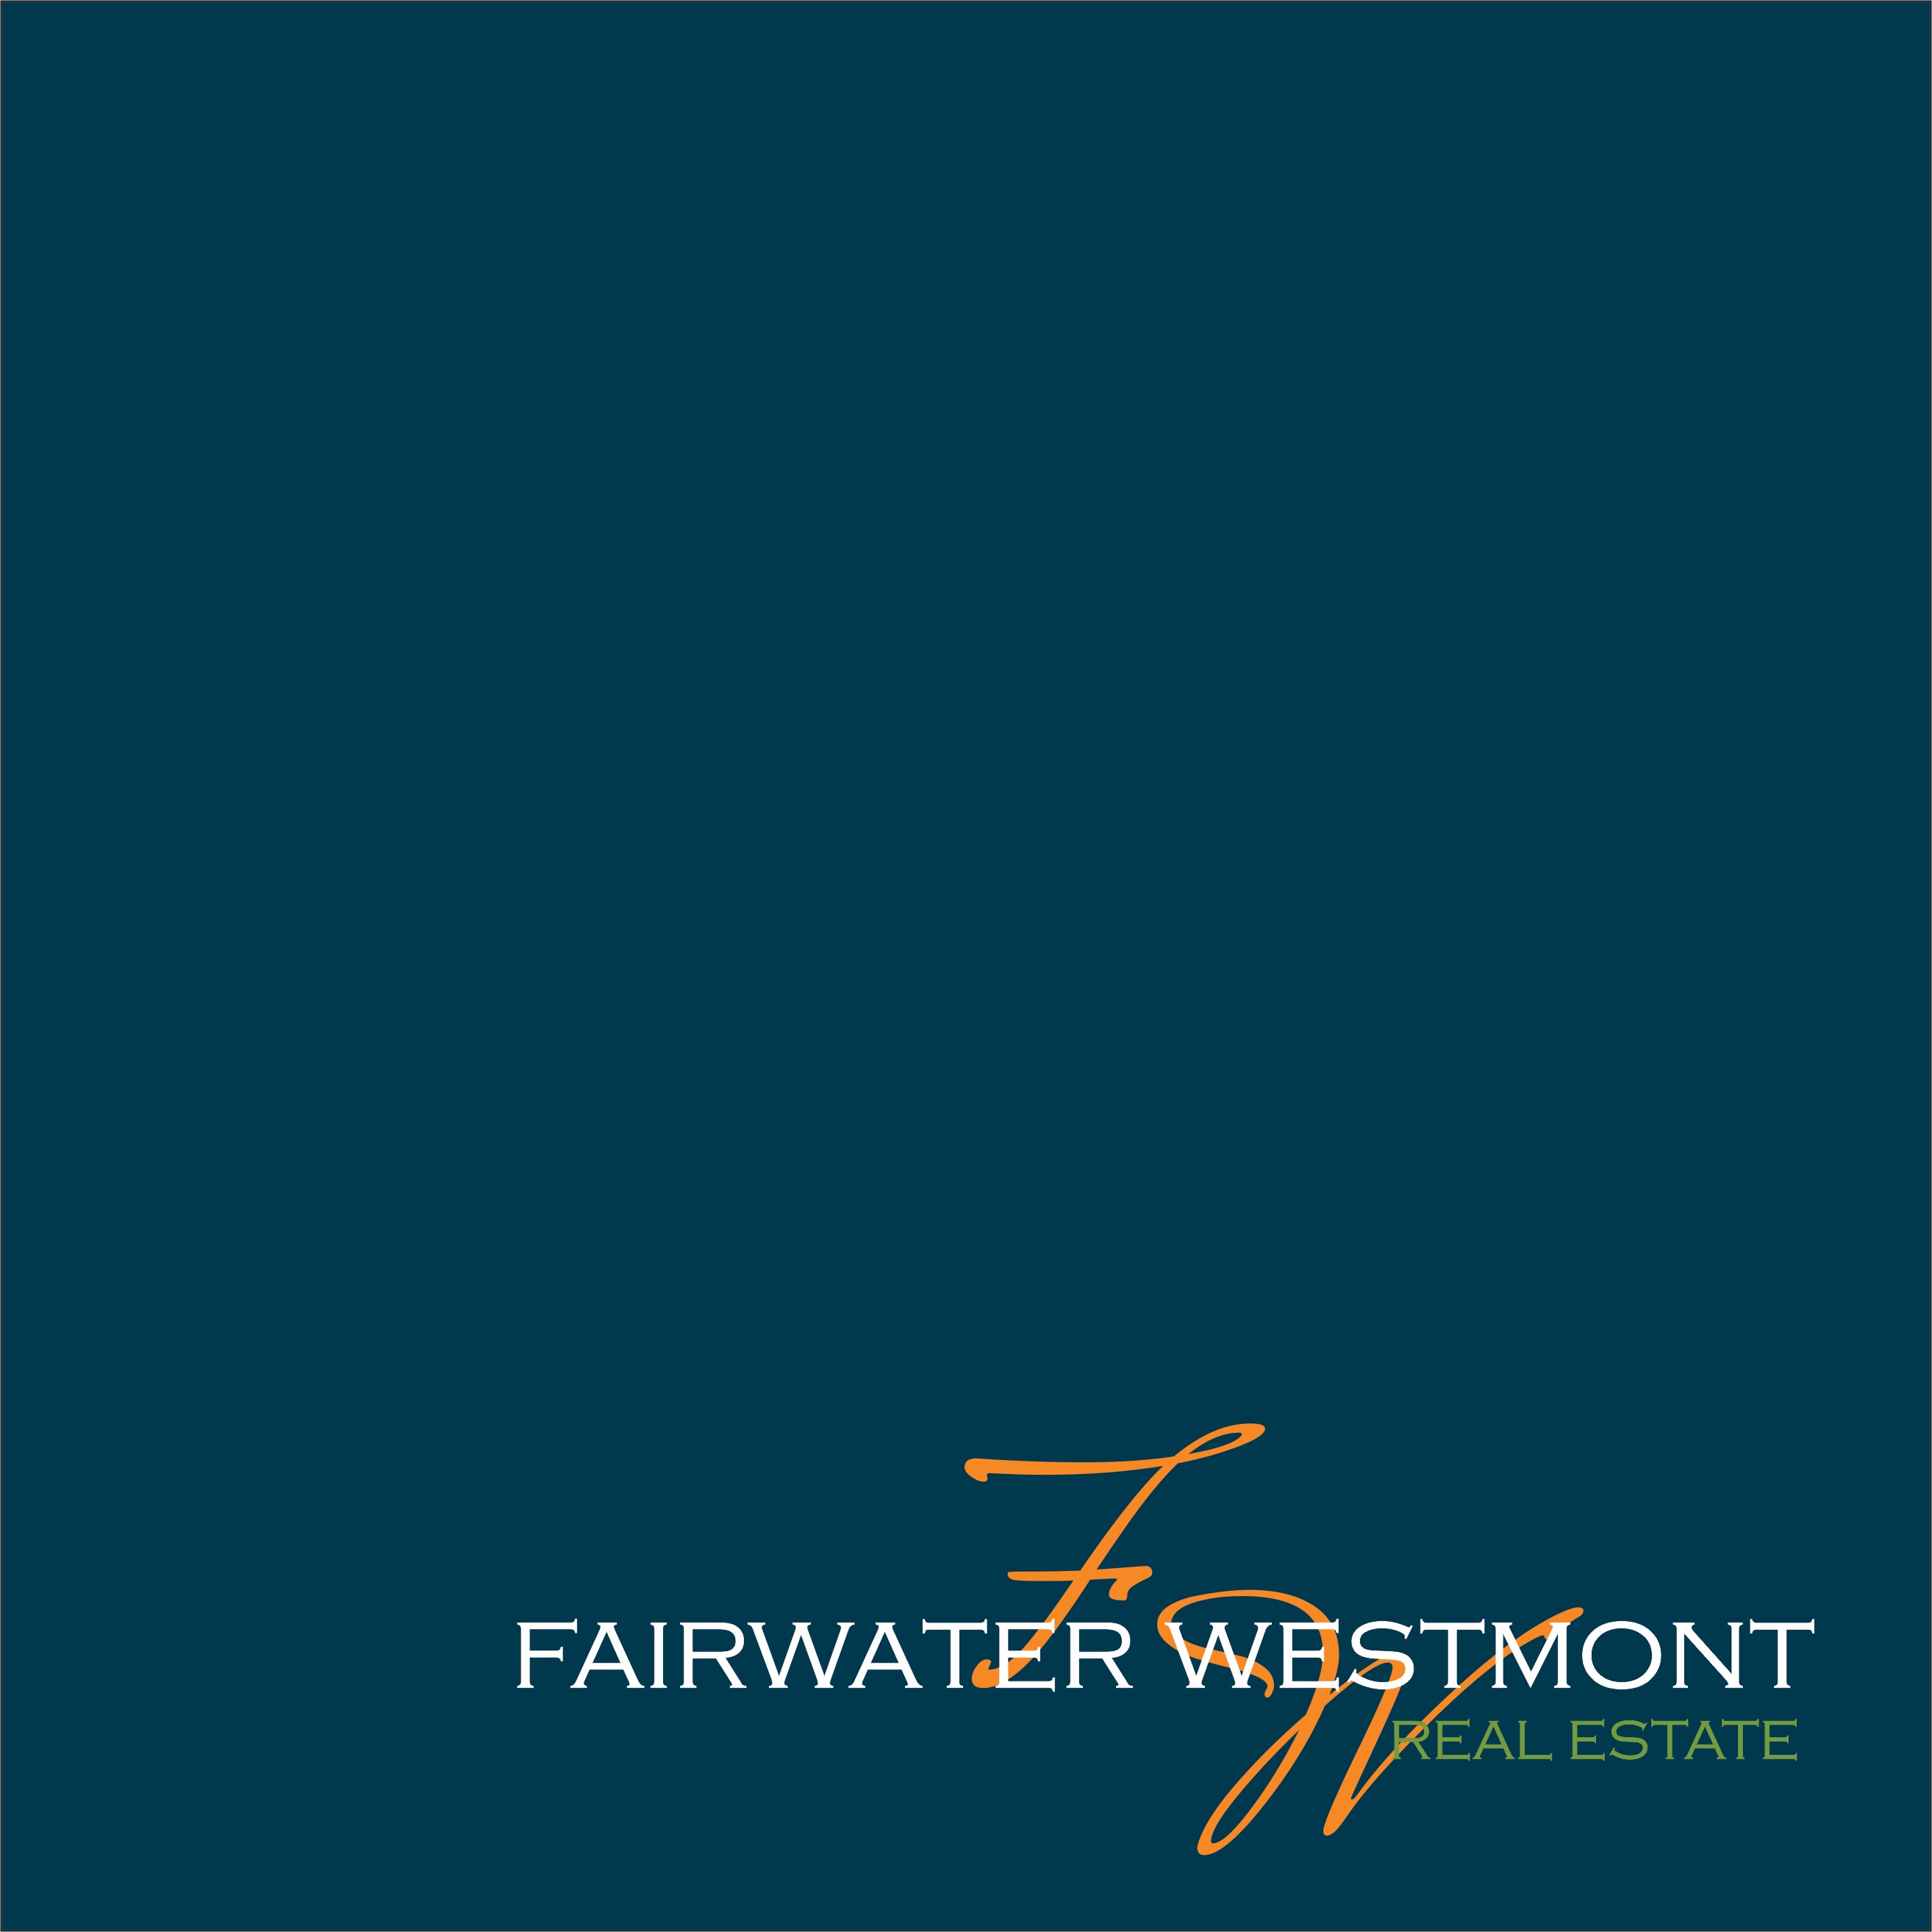 Fairwater Westmont Real Estate